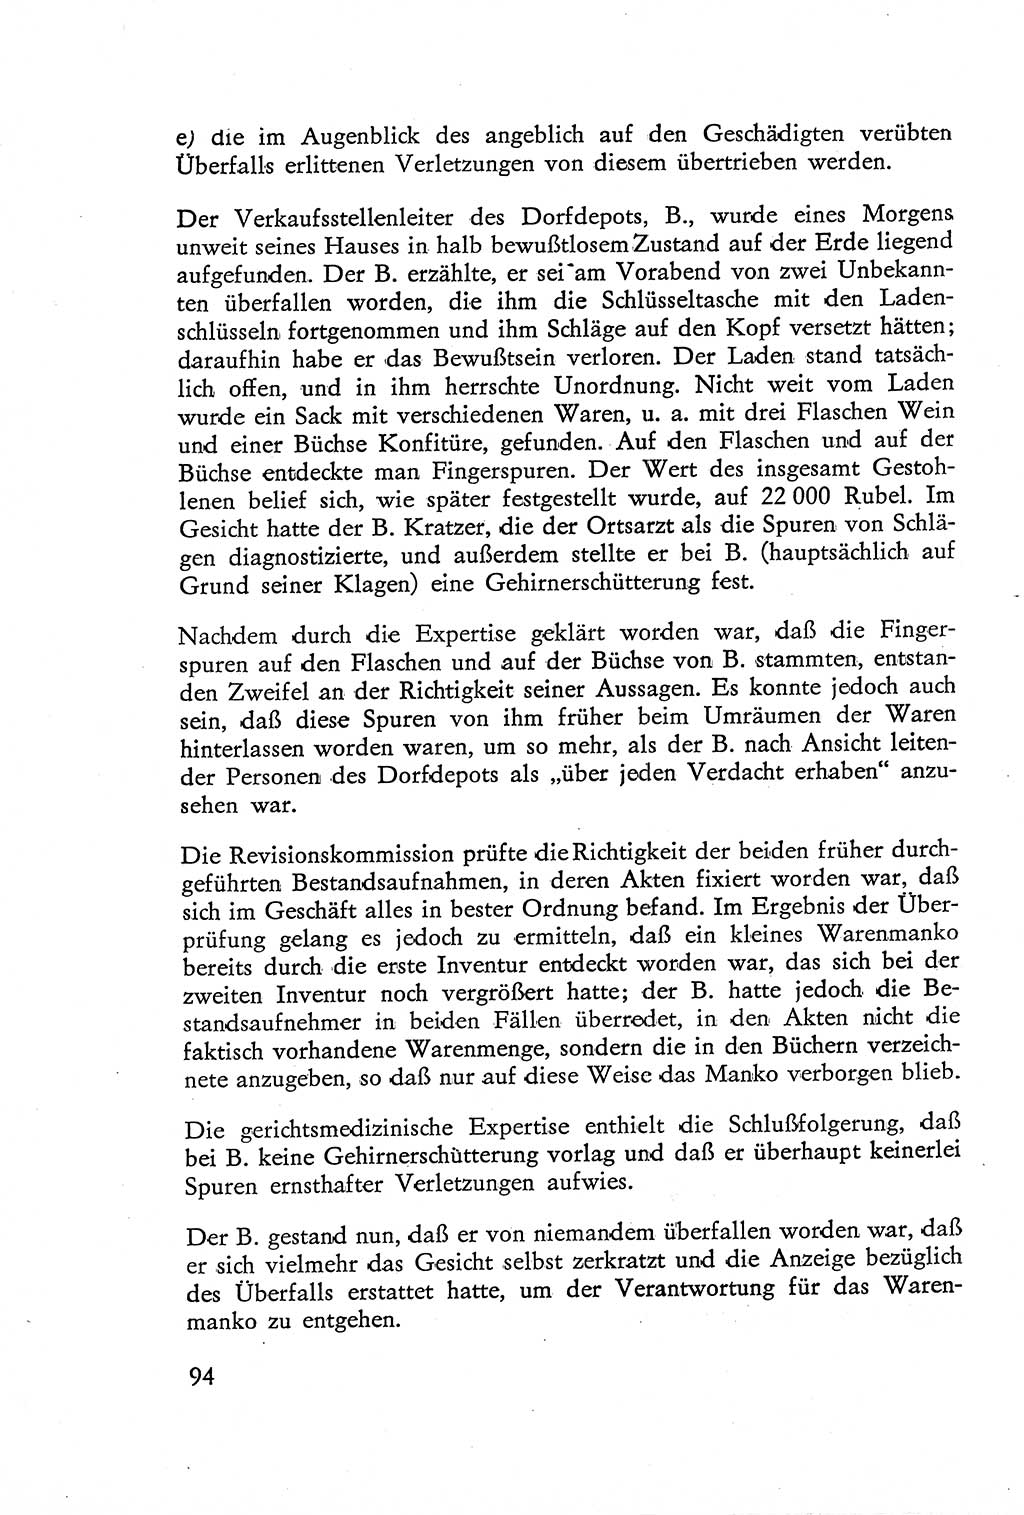 Die Untersuchung einzelner Verbrechensarten [Deutsche Demokratische Republik (DDR)] 1960, Seite 94 (Unters. Verbr.-Art. DDR 1960, S. 94)